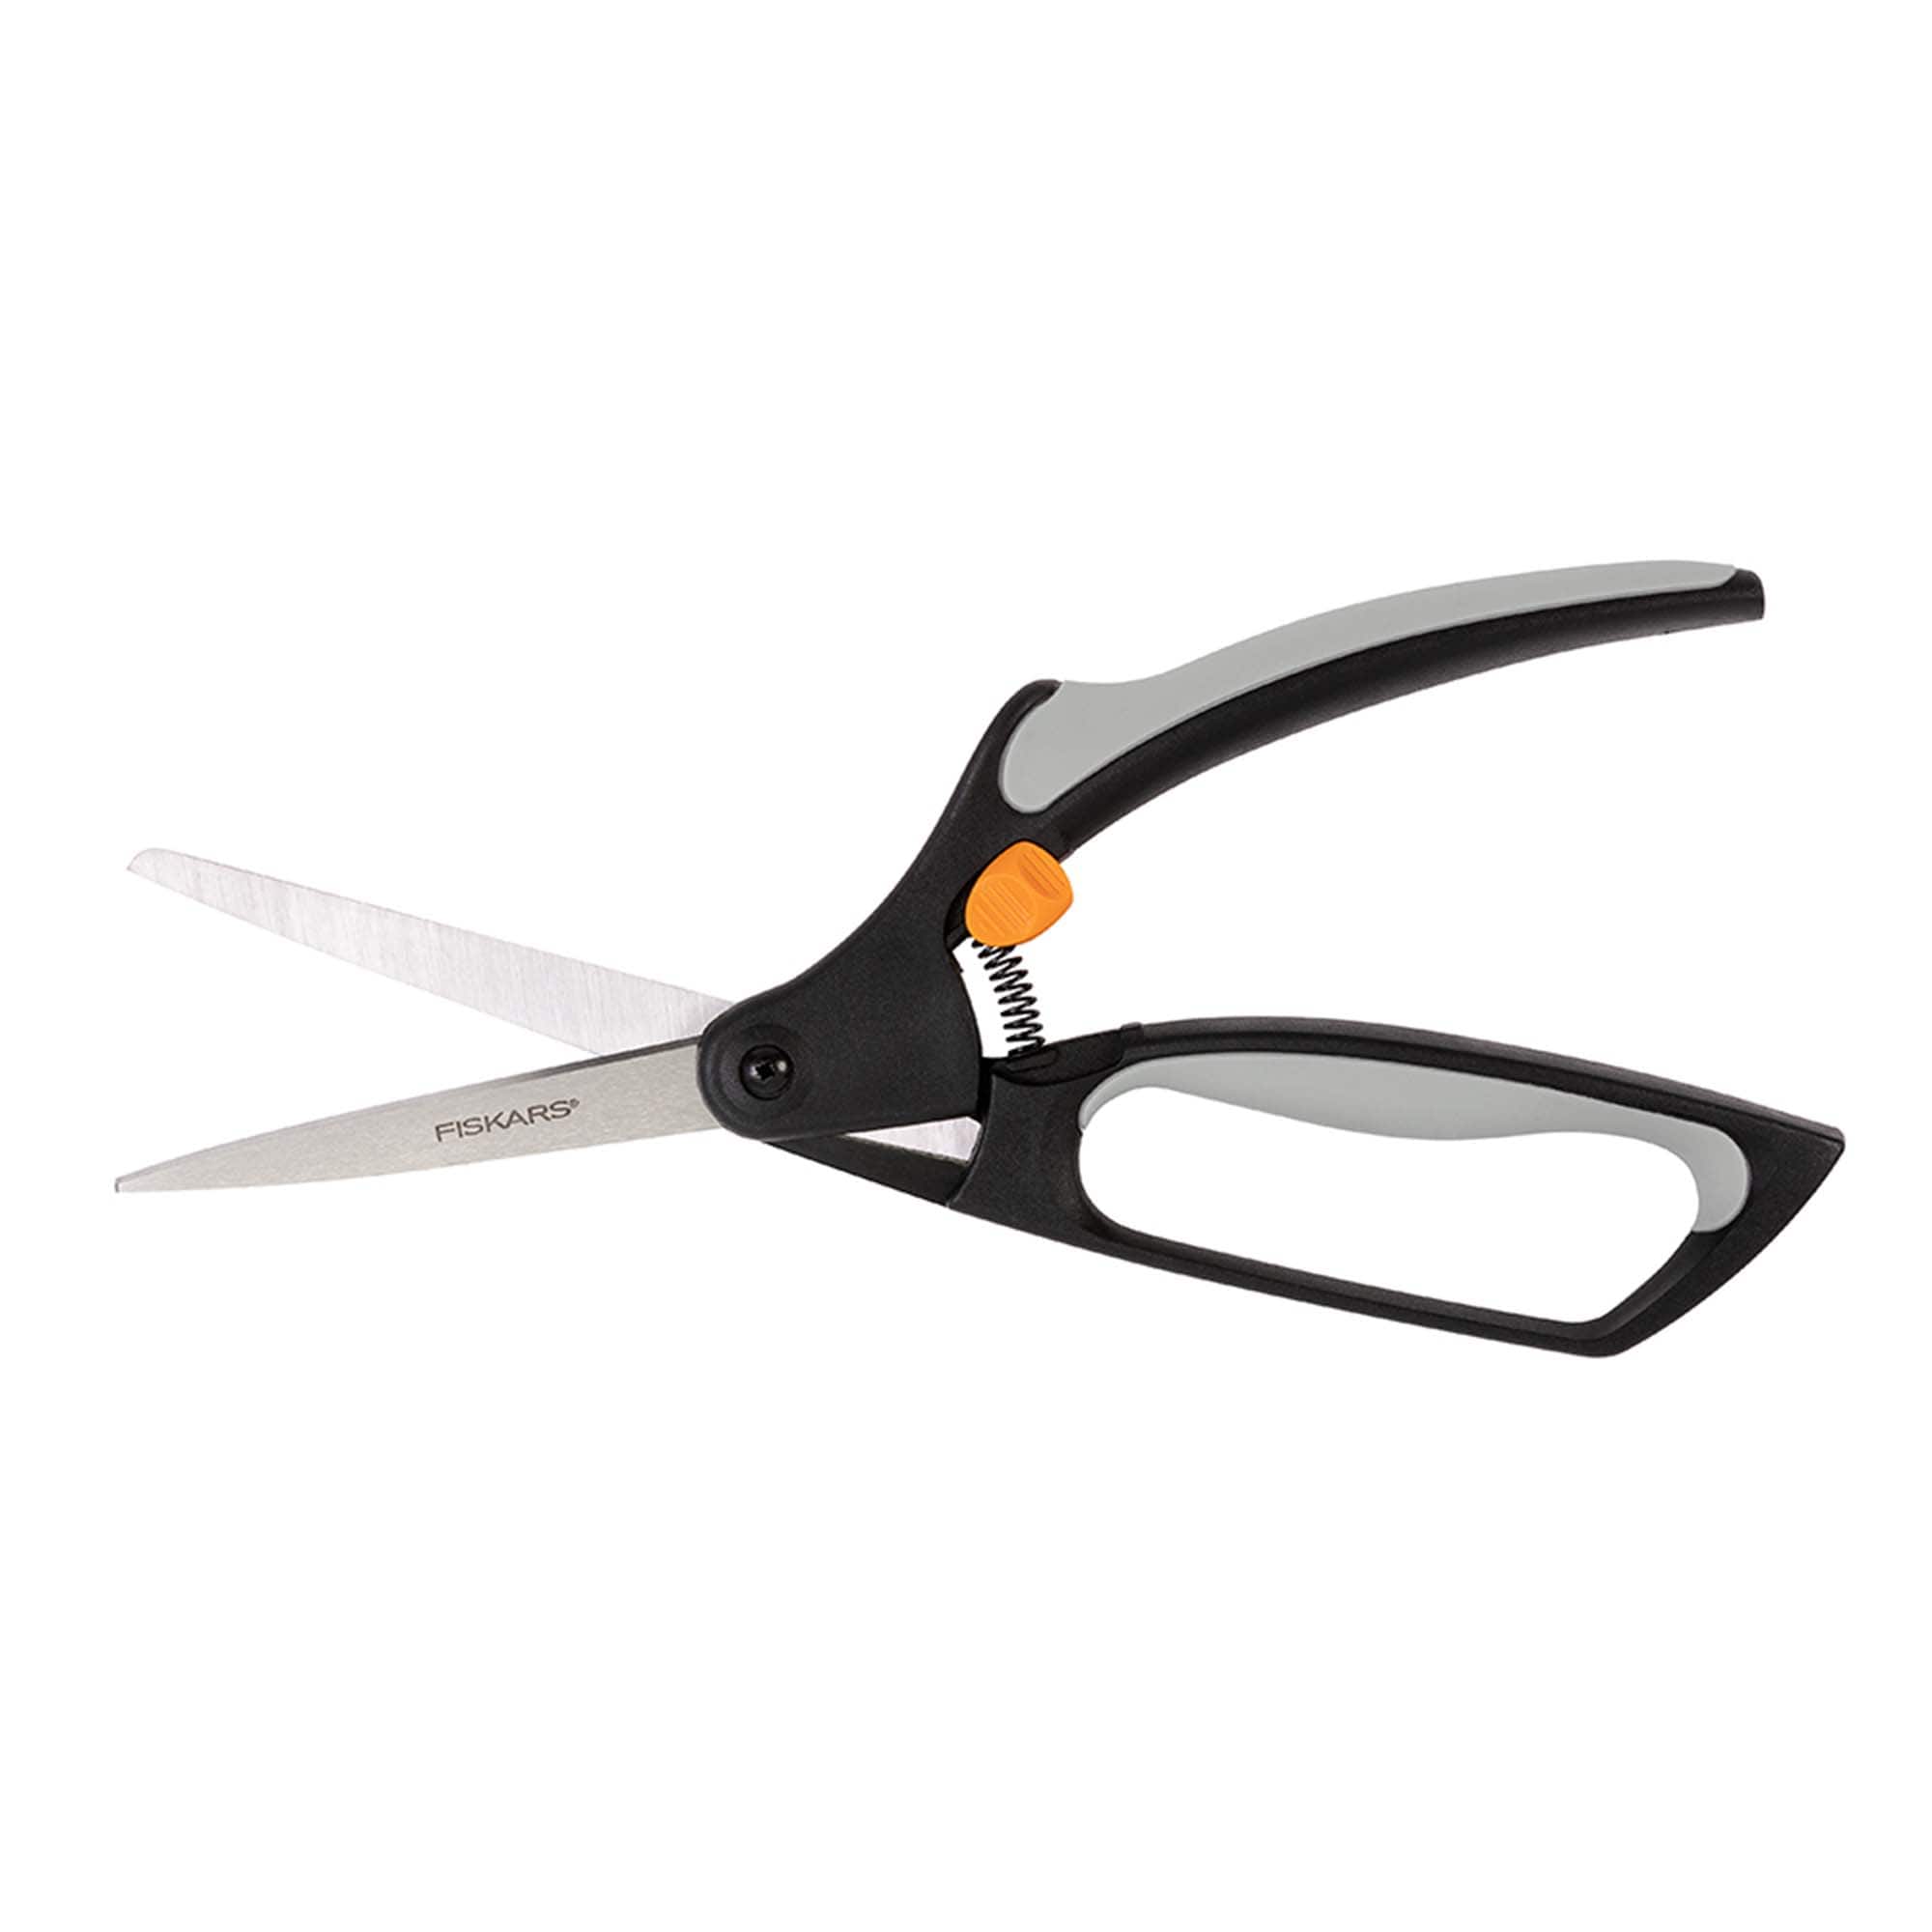 Sharp & Sturdy Fiskars Scissors